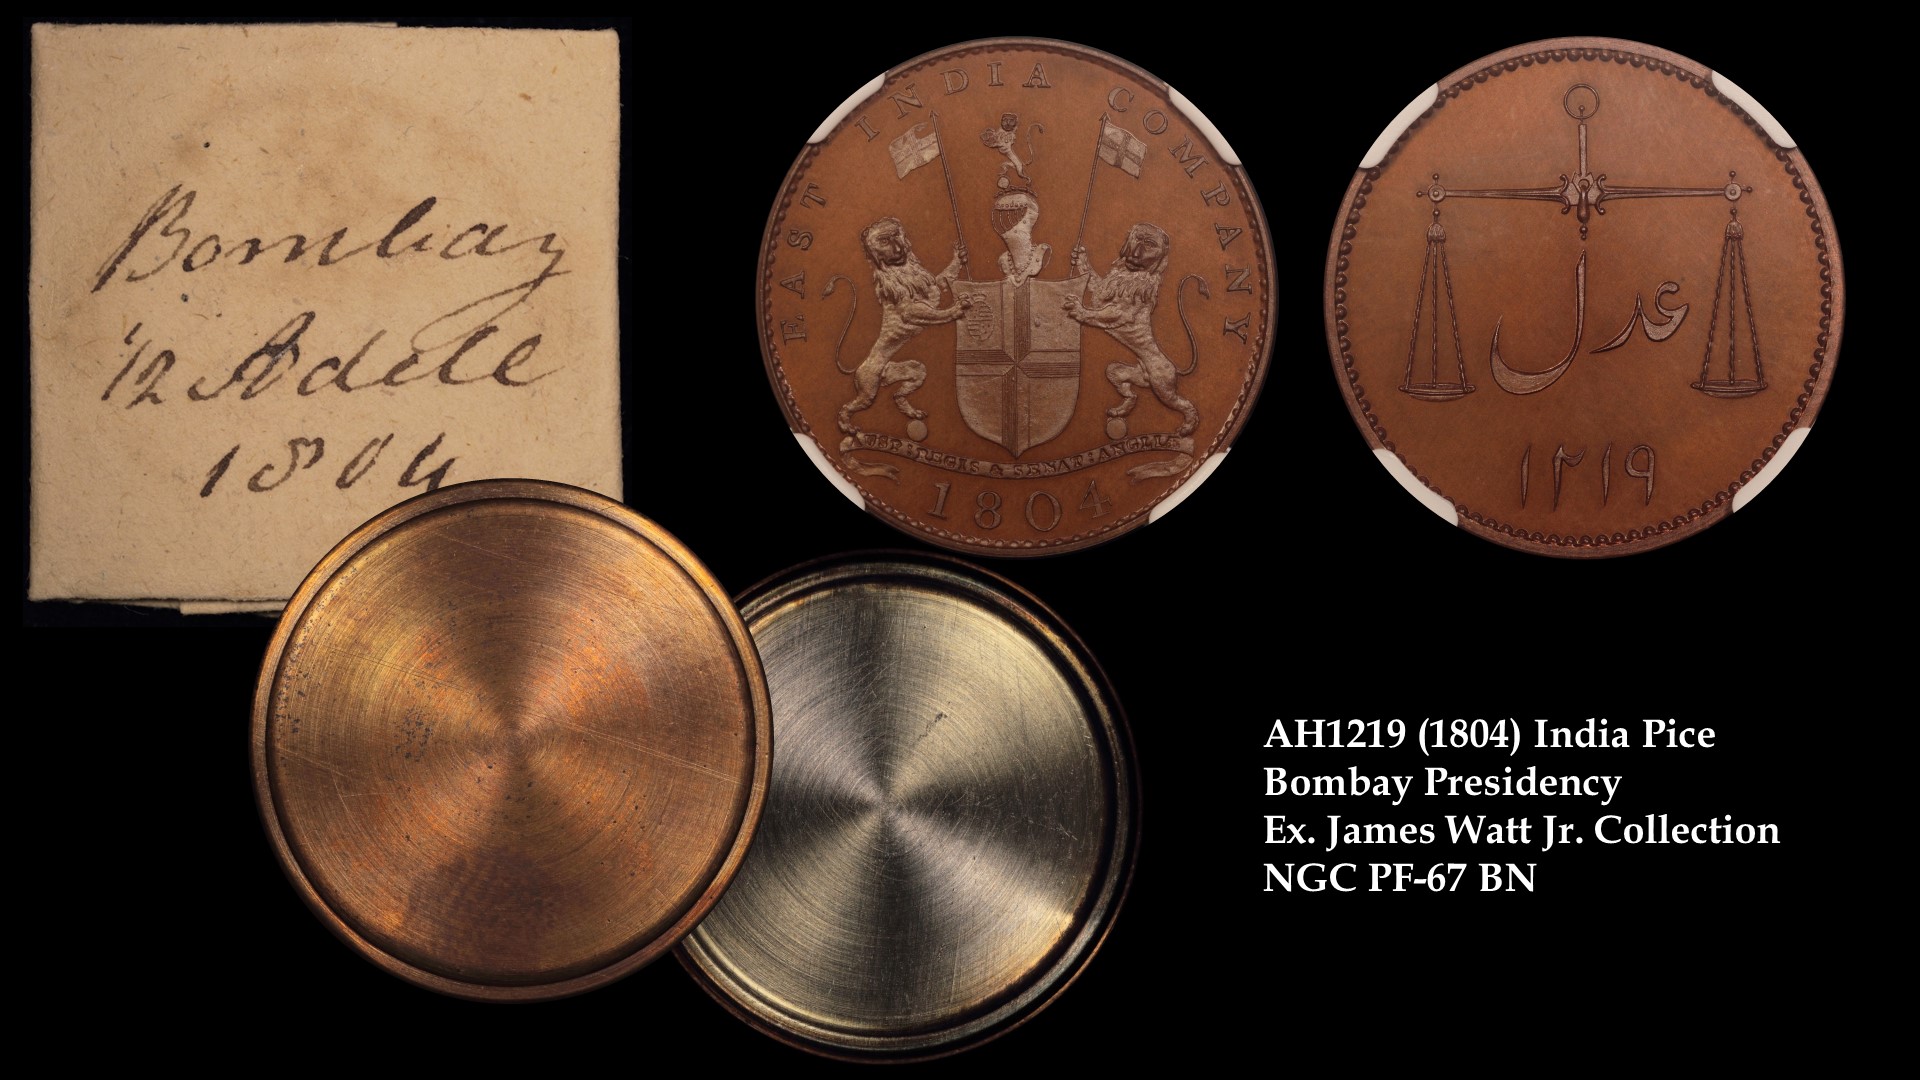 1804 (AH1219) India Pice Bombay Presidency Ex James Watt Jr. PF-67 BN 4494270004 EDITED.jpg